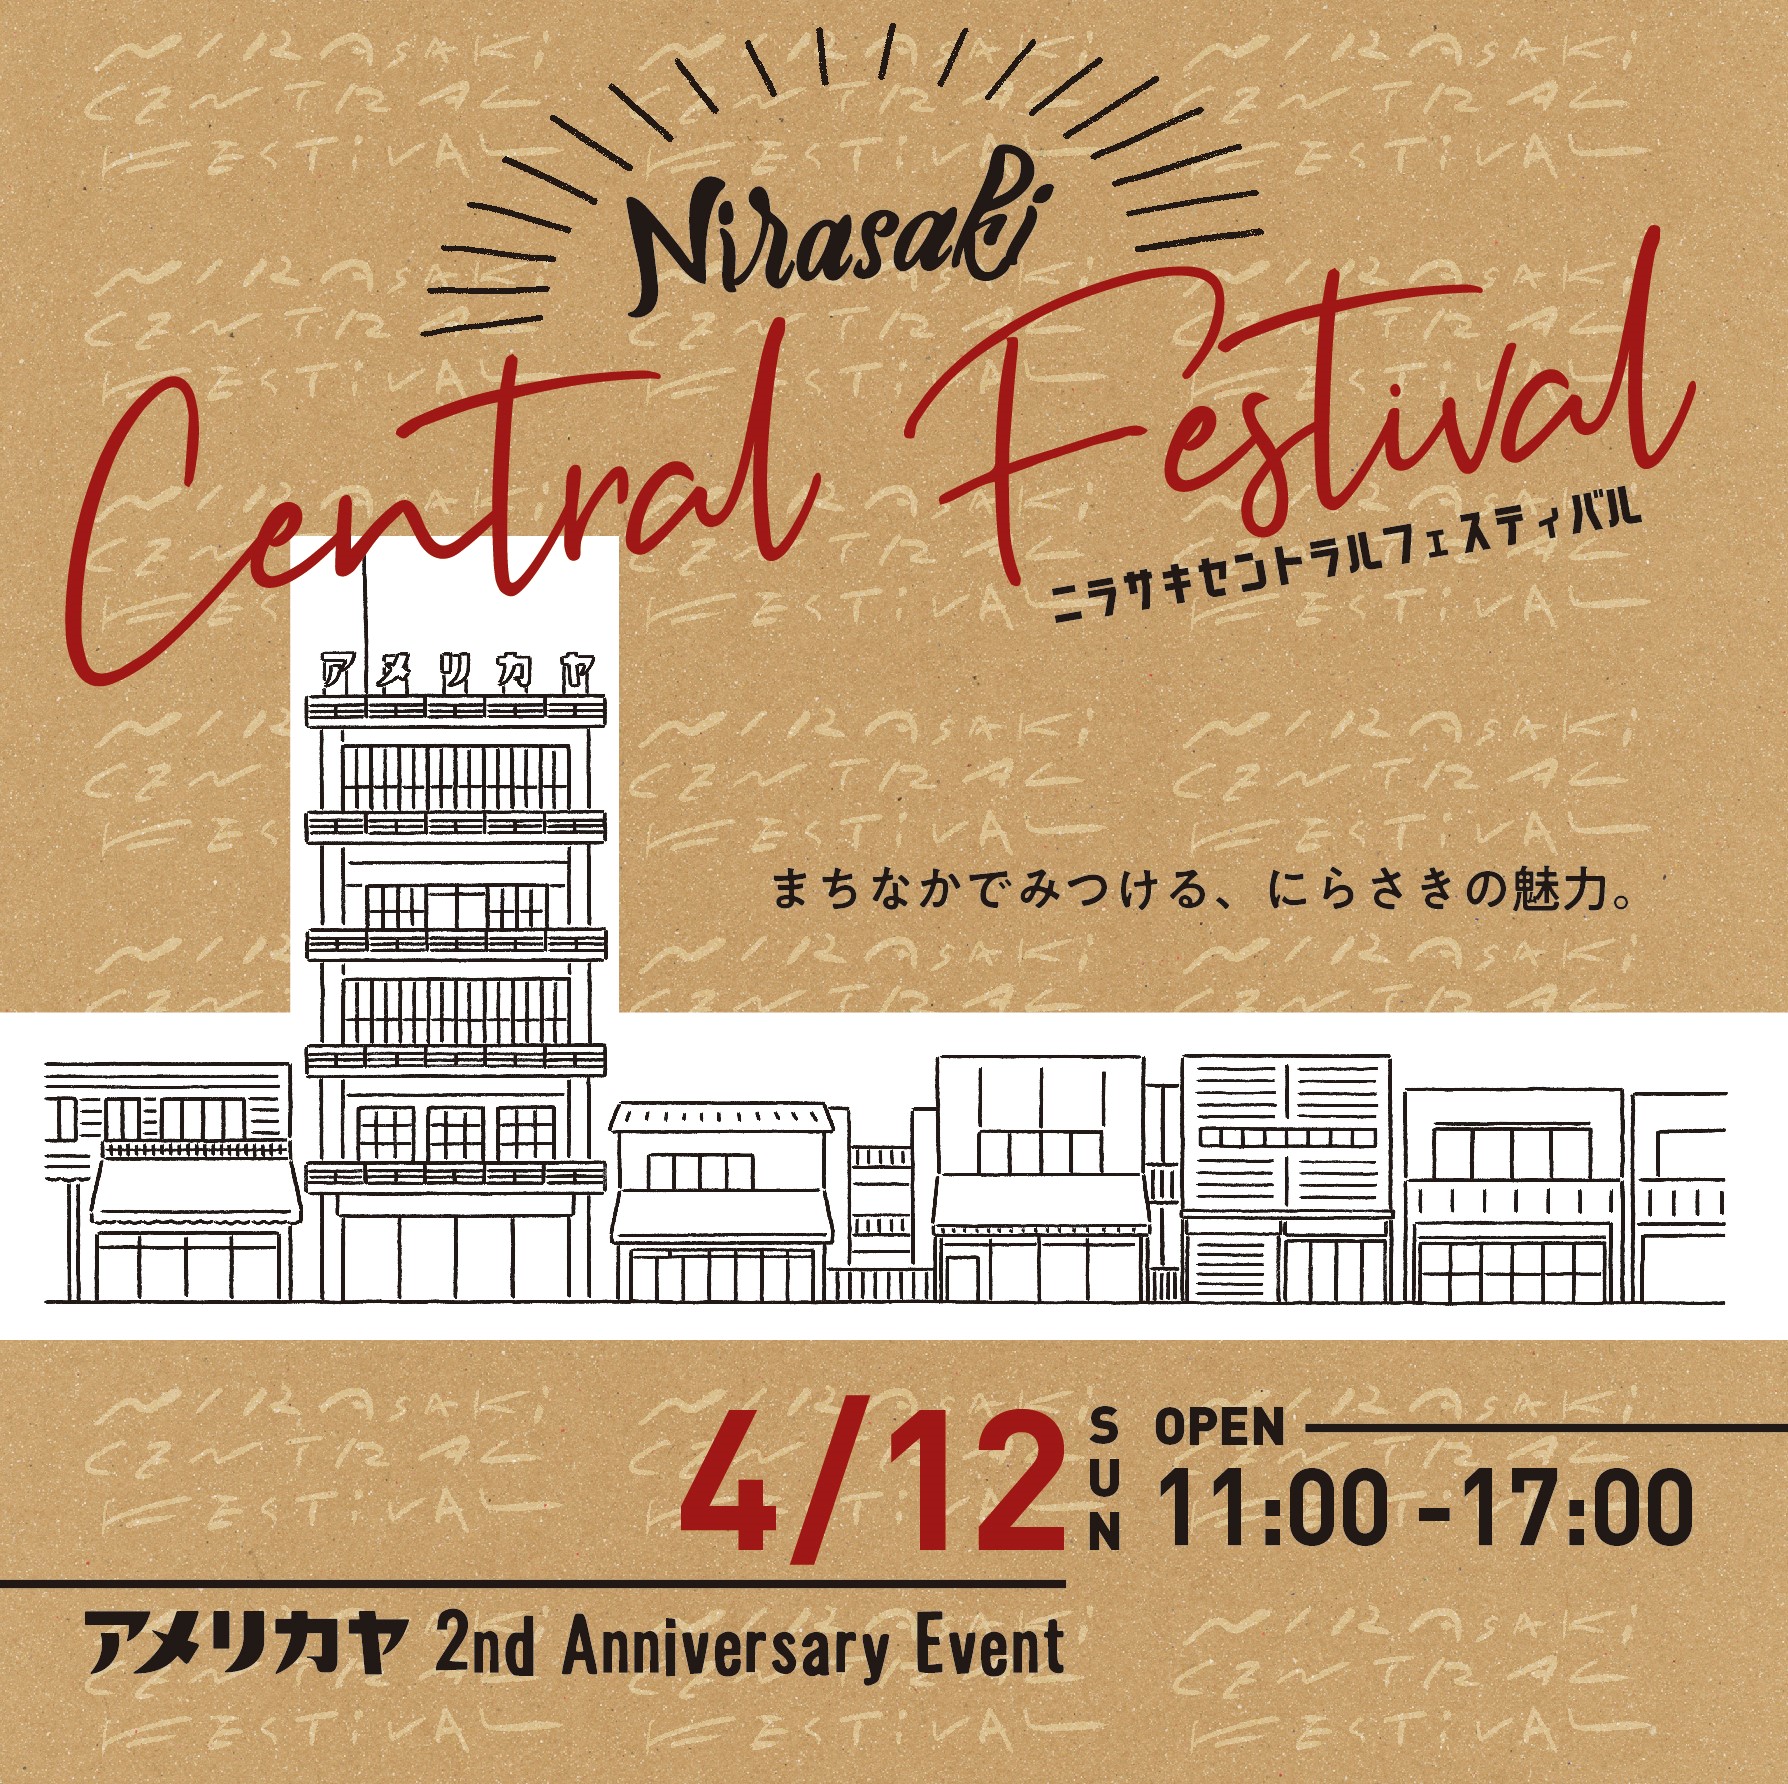 【開催延期】Nirasaki Central Festival（4月12日）アメリカヤ 2nd Anniversary Event